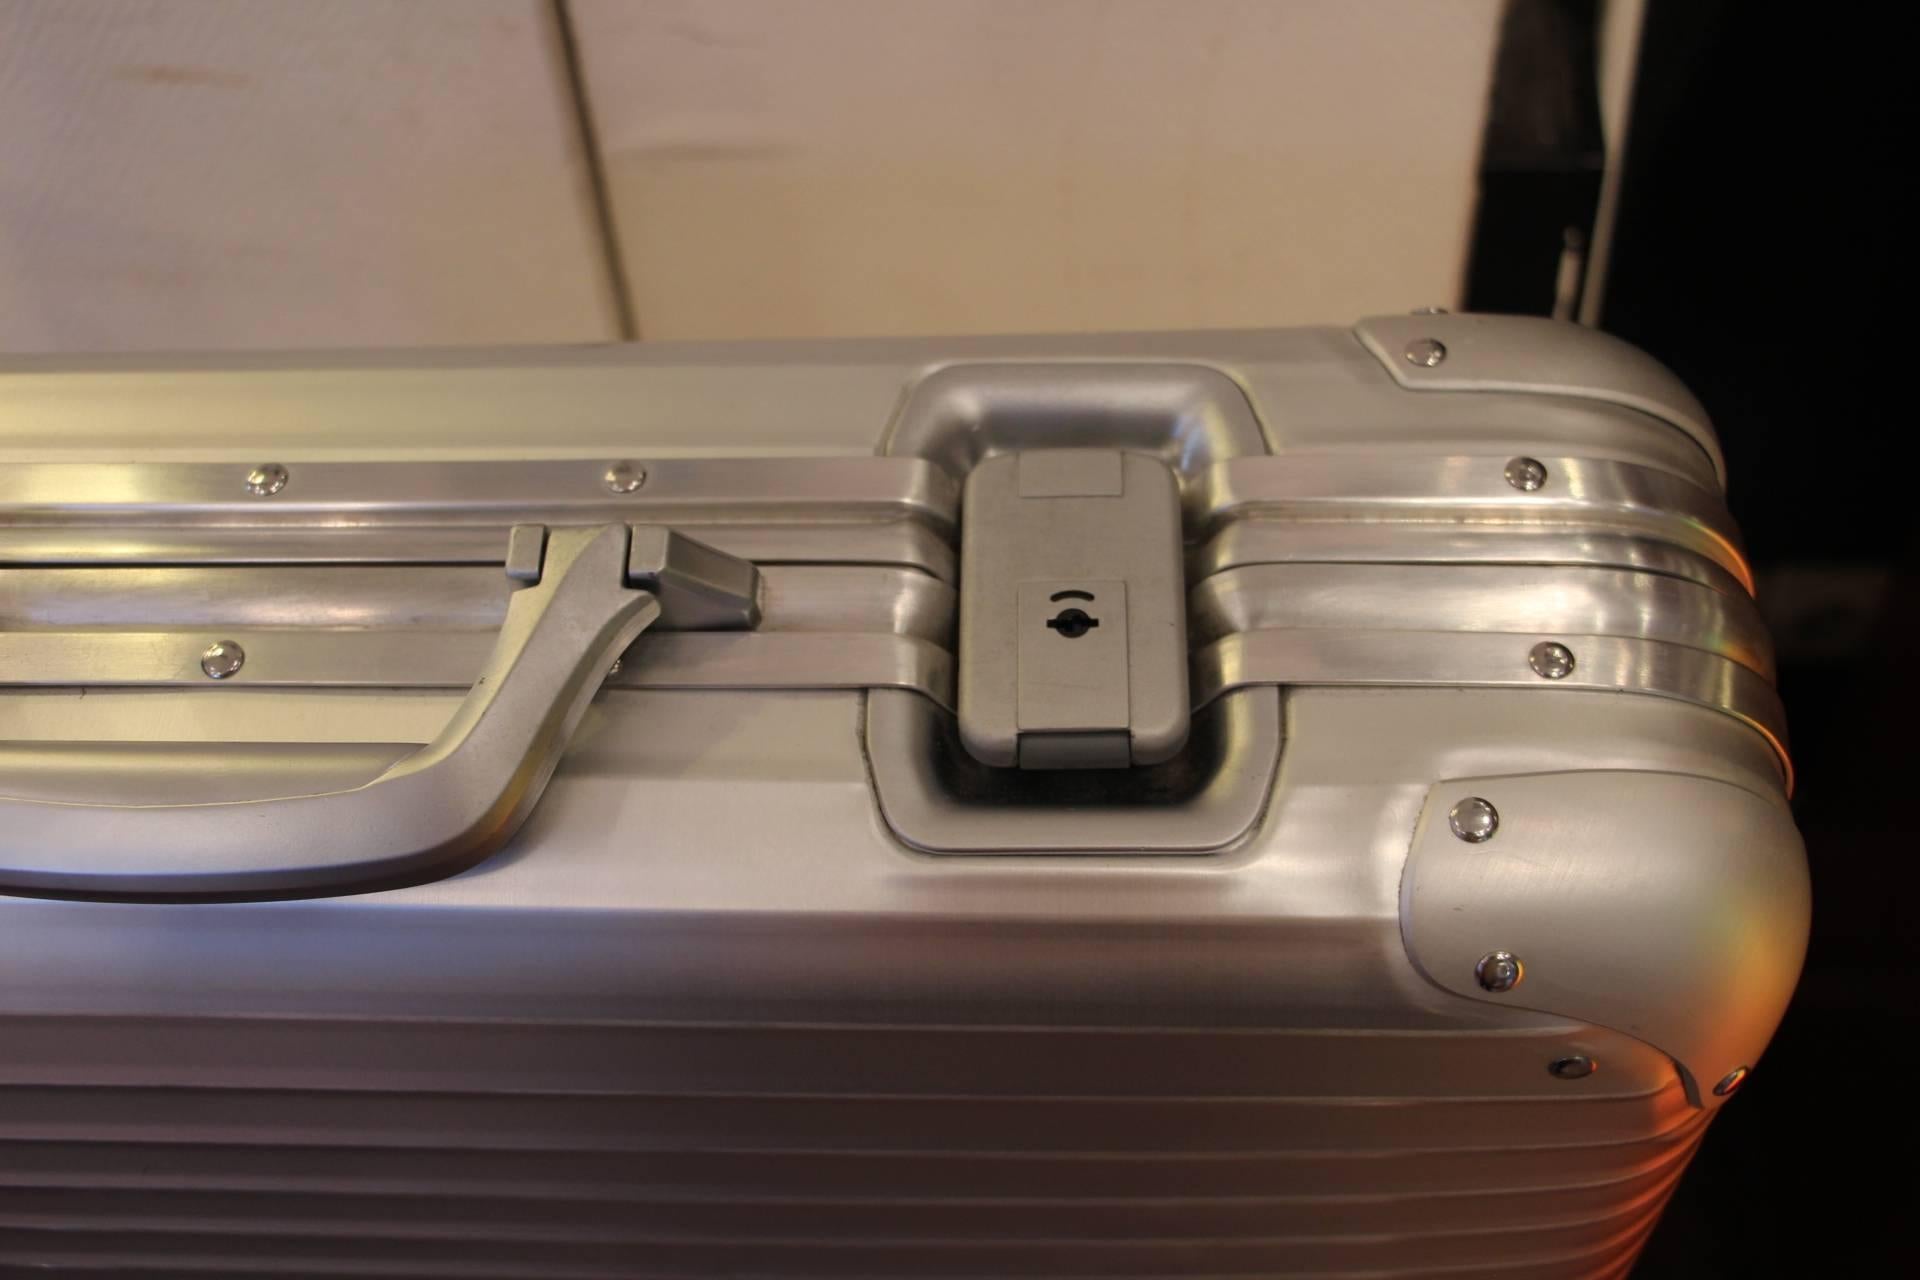 Beautiful Rimowa Porsche aluminium suitcase with its original interior.